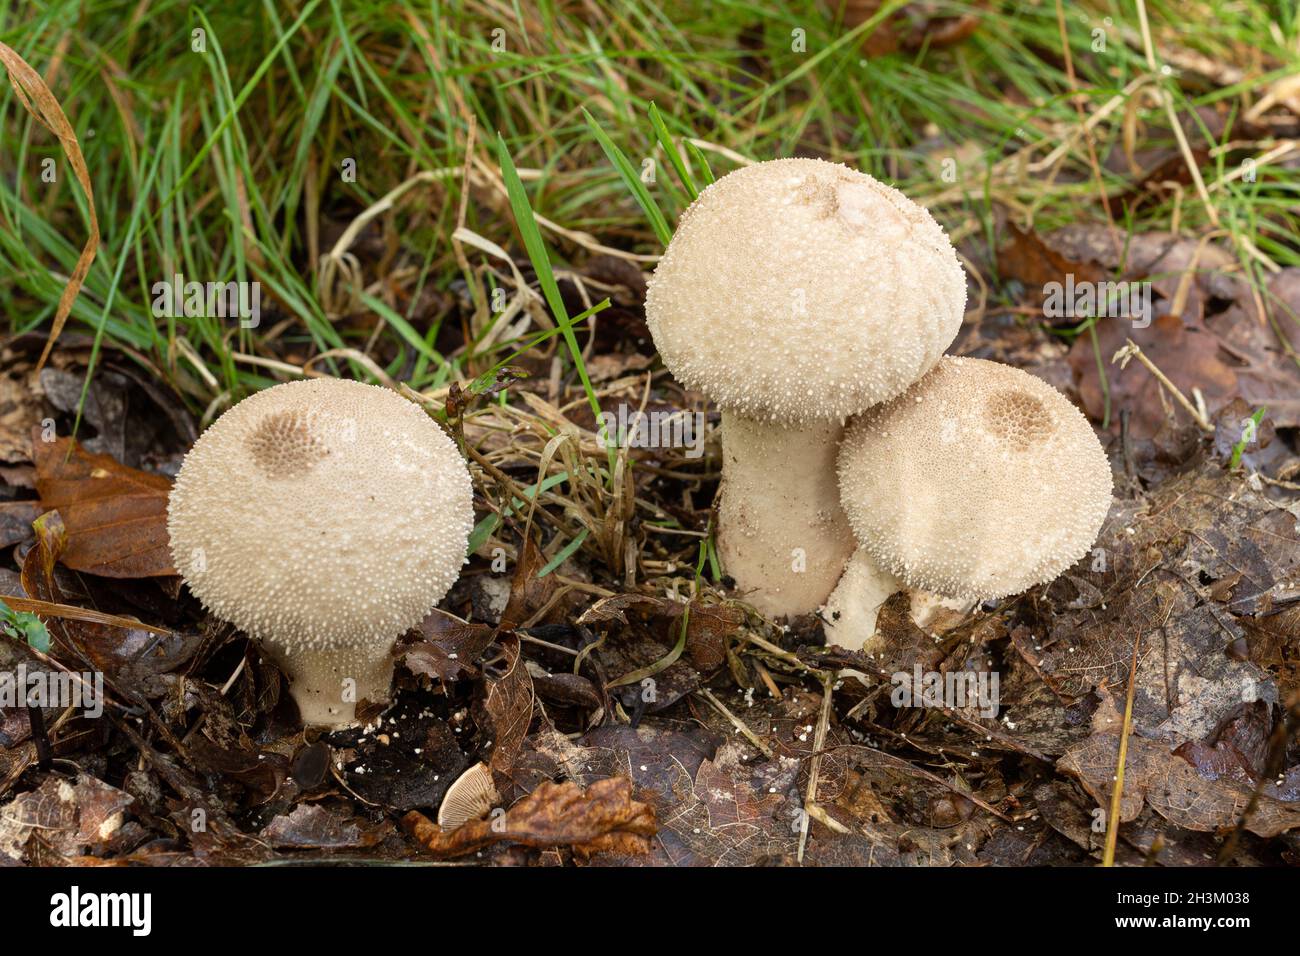 Funghi comuni del puffball (Lycooperdon perlatum) che crescono sul pavimento del bosco durante l'autunno o la caduta, Regno Unito Foto Stock